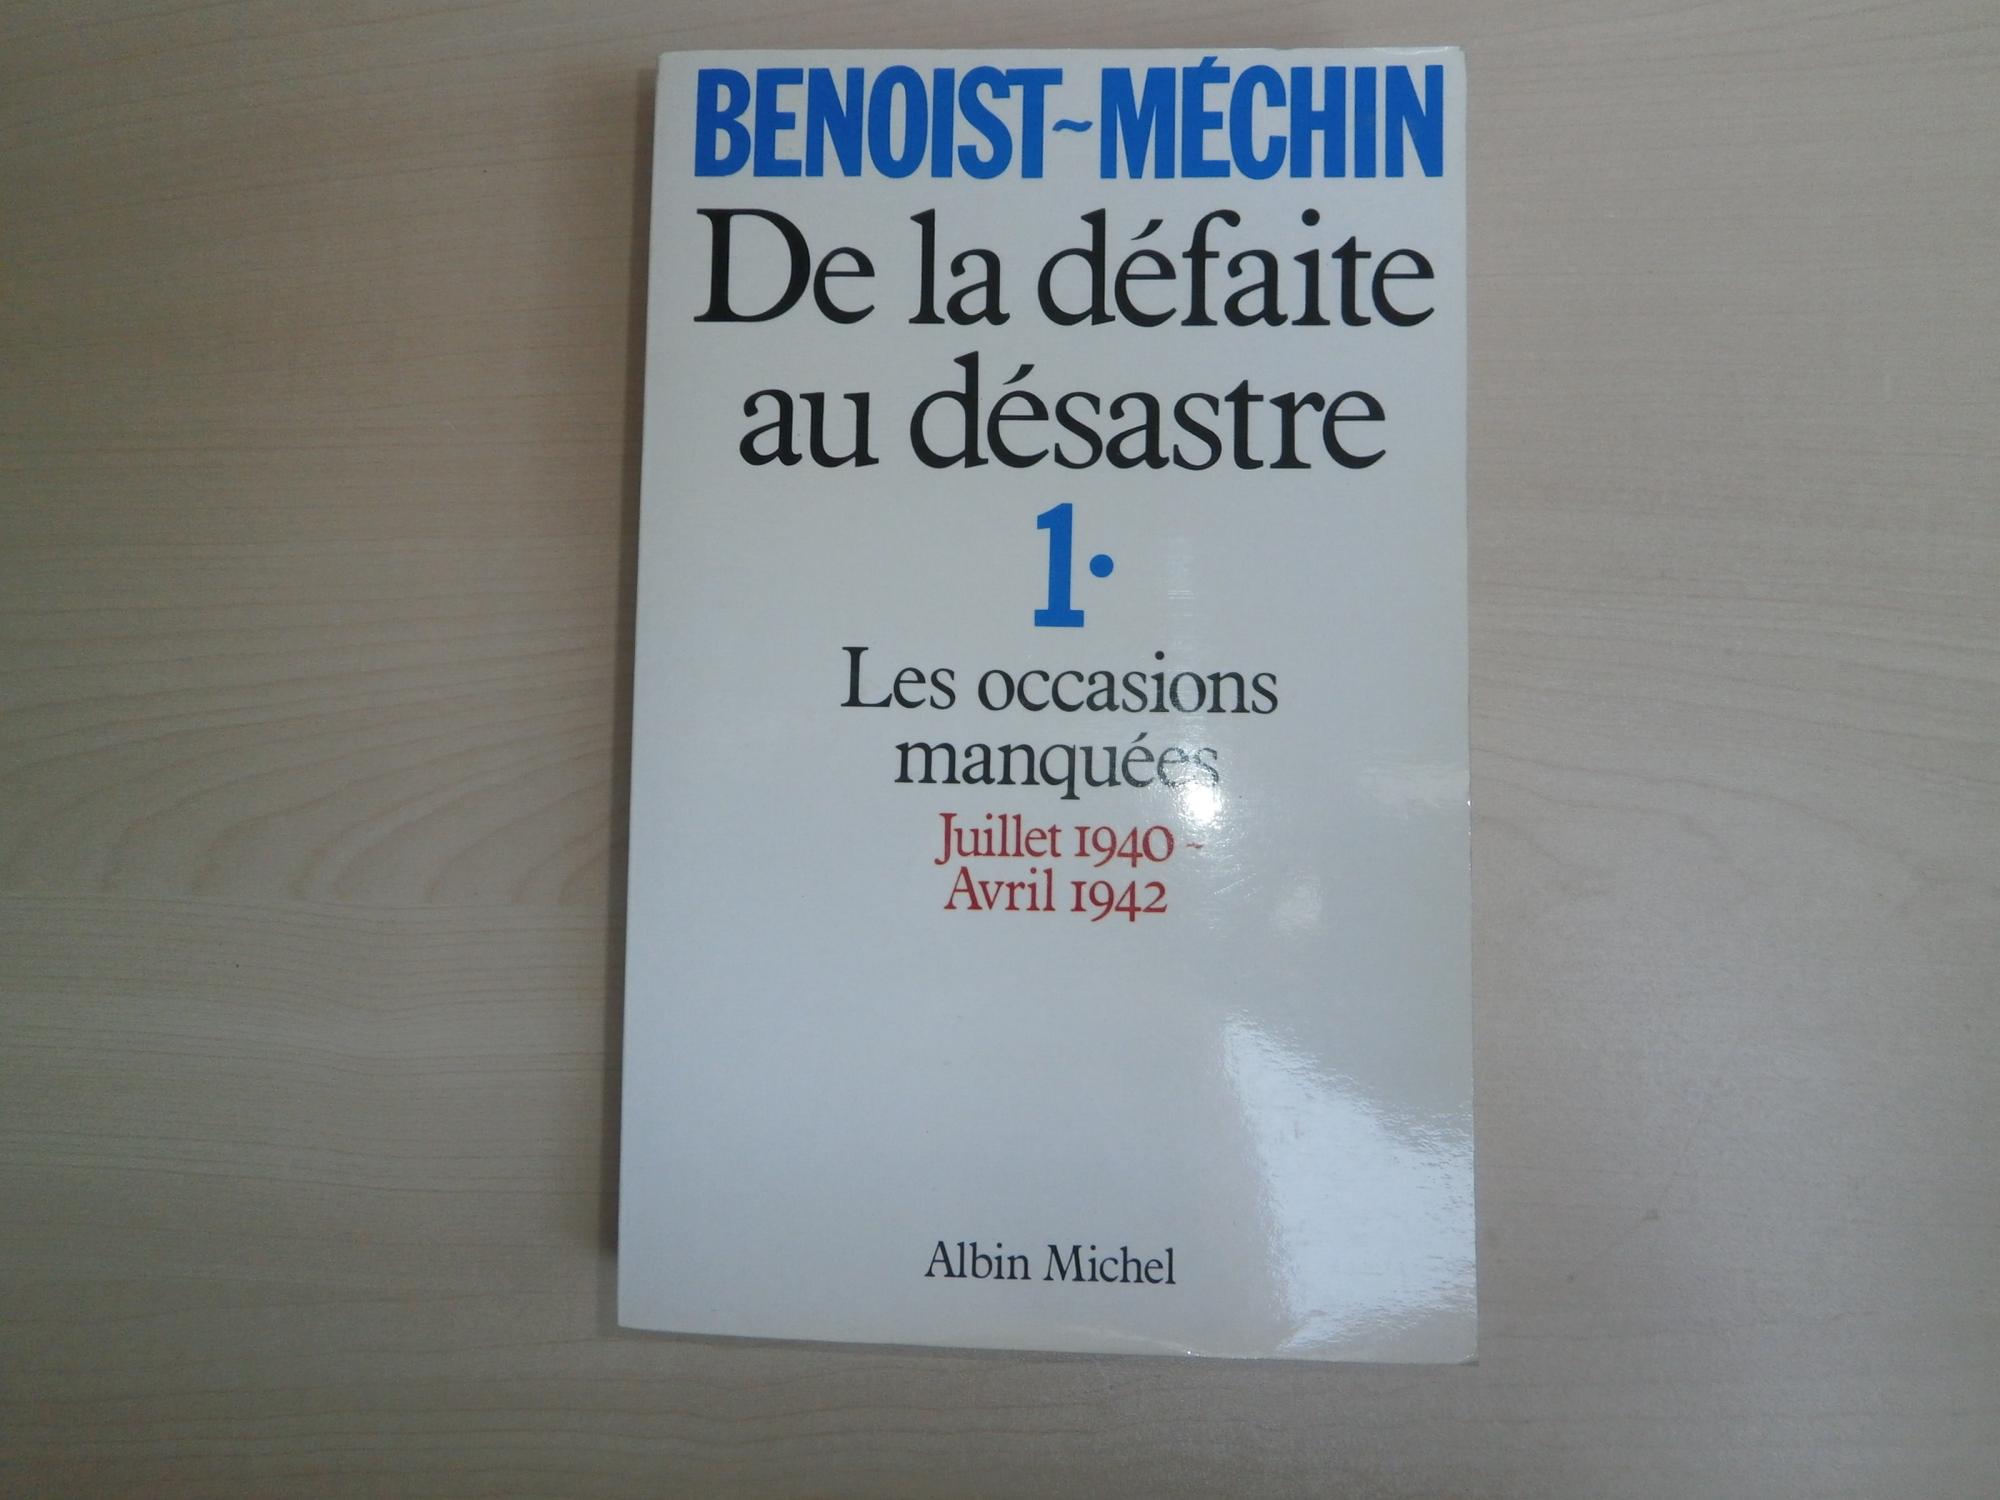 DE LA DEFAITE AU DESASTRE T.1 ; LES OCCASIONS MANQUEES JUILLET 1940 - AVRIL 1942 - BENOIST-MECHIN, JACQUES